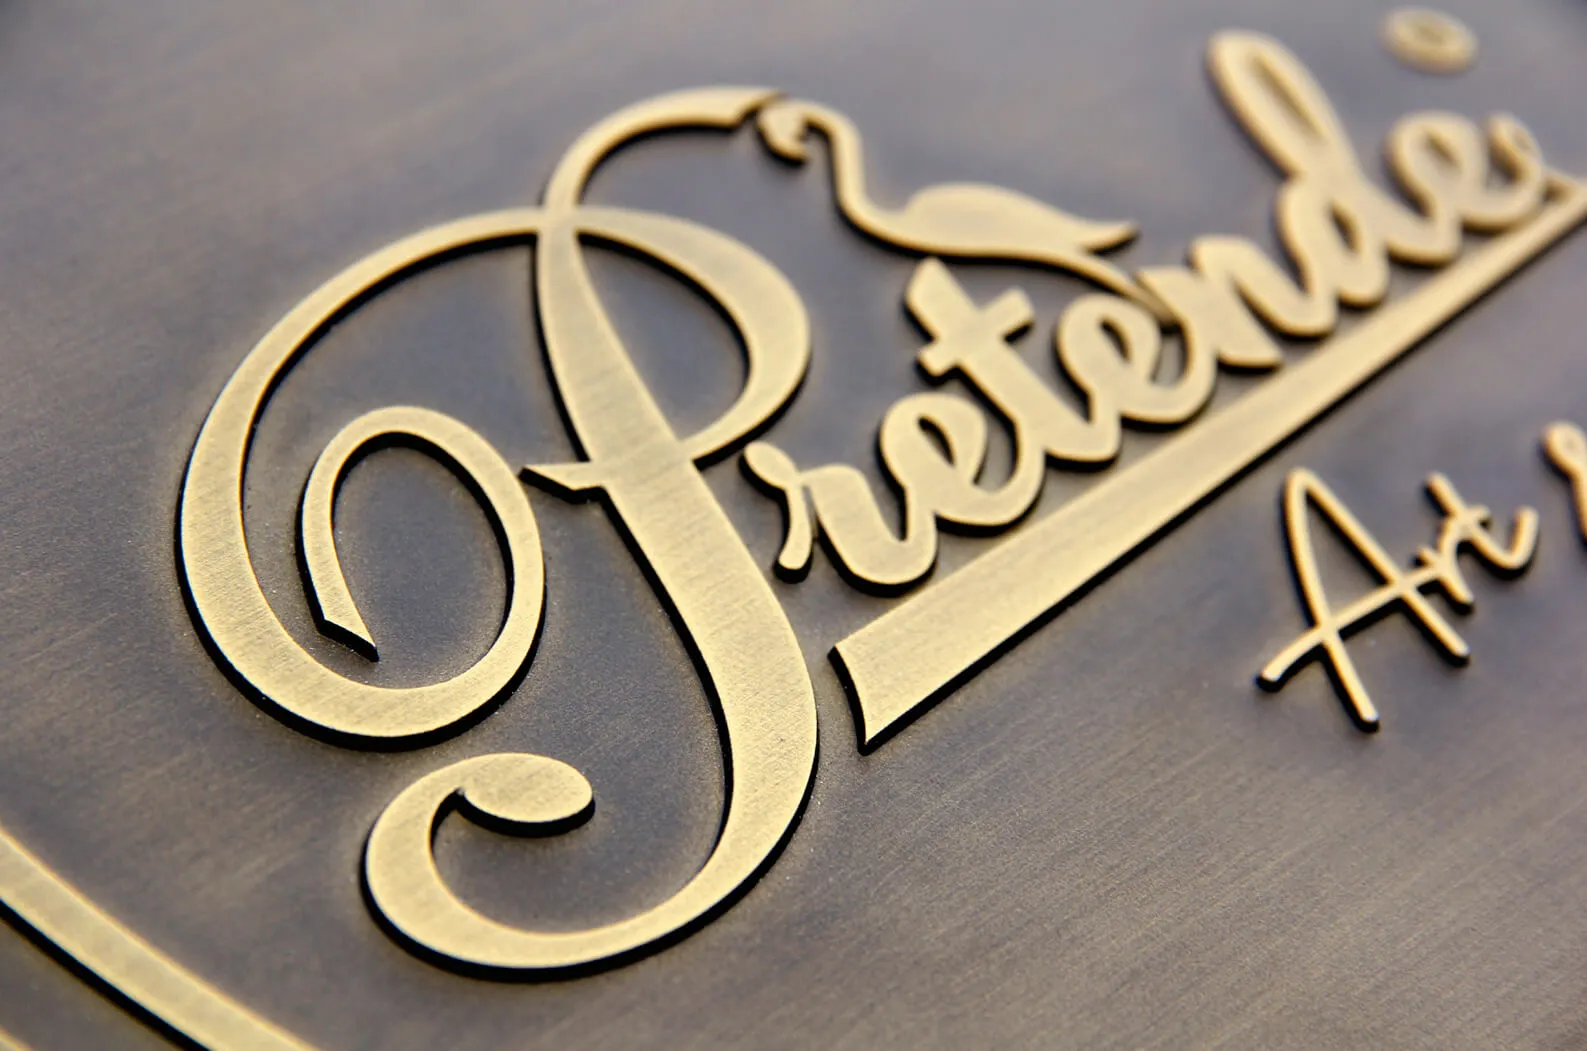 Pretende gegossene Plakette - 3D-Plakette aus Bronzeguss mit Pretende-Logo